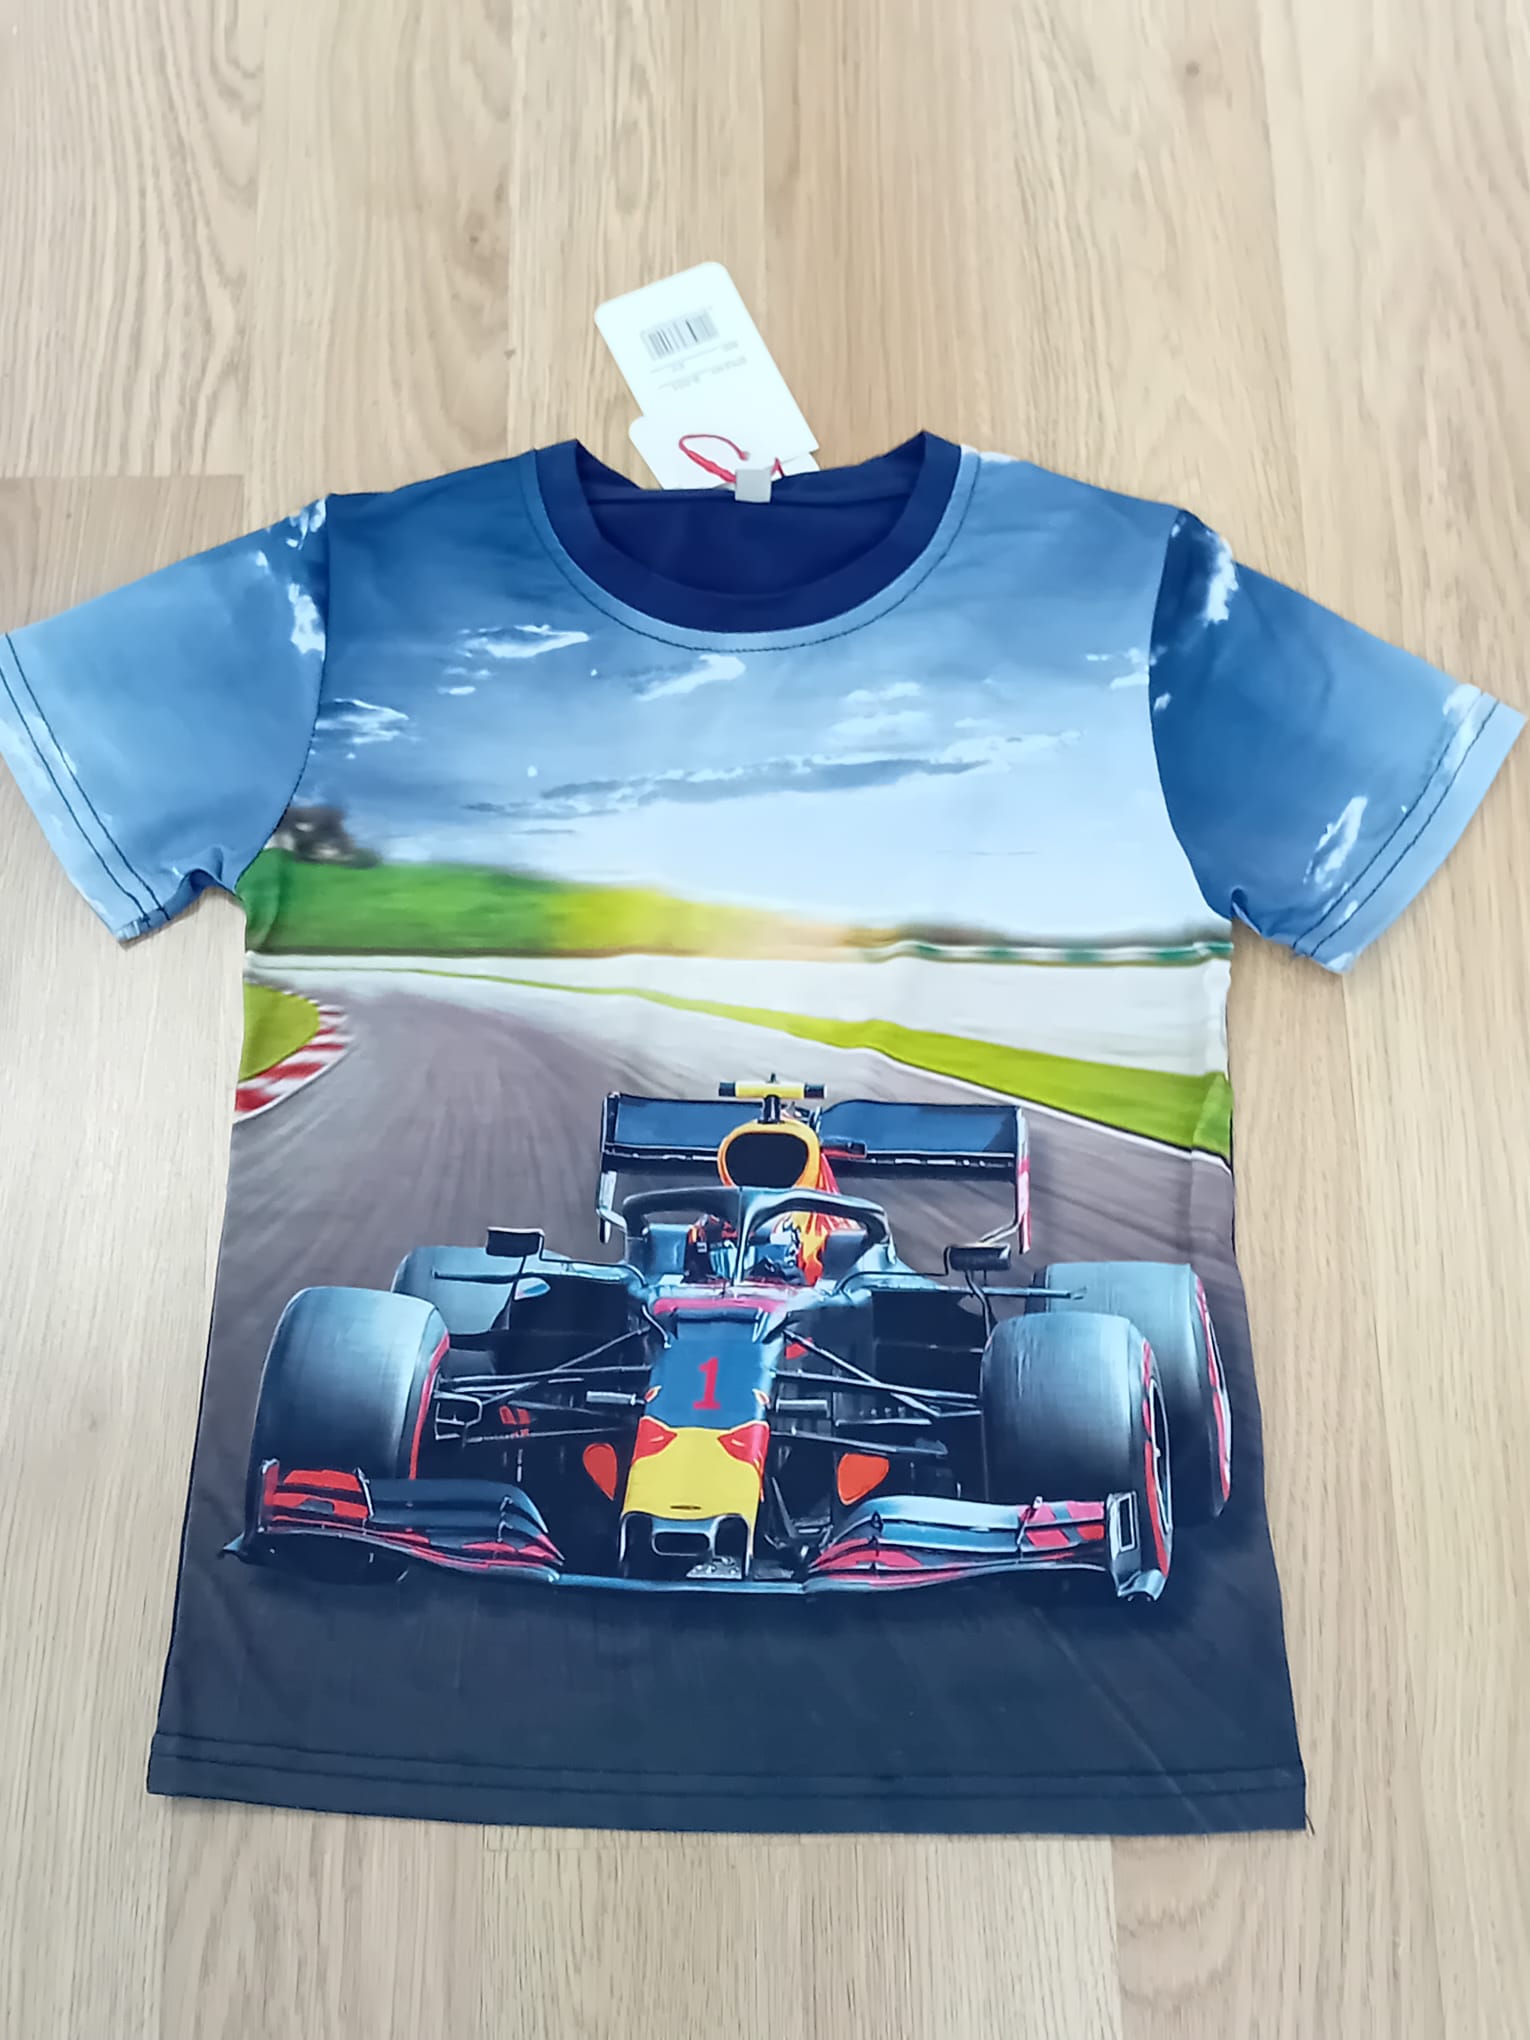 Volwassen t-shirt met Formule 1 wagen